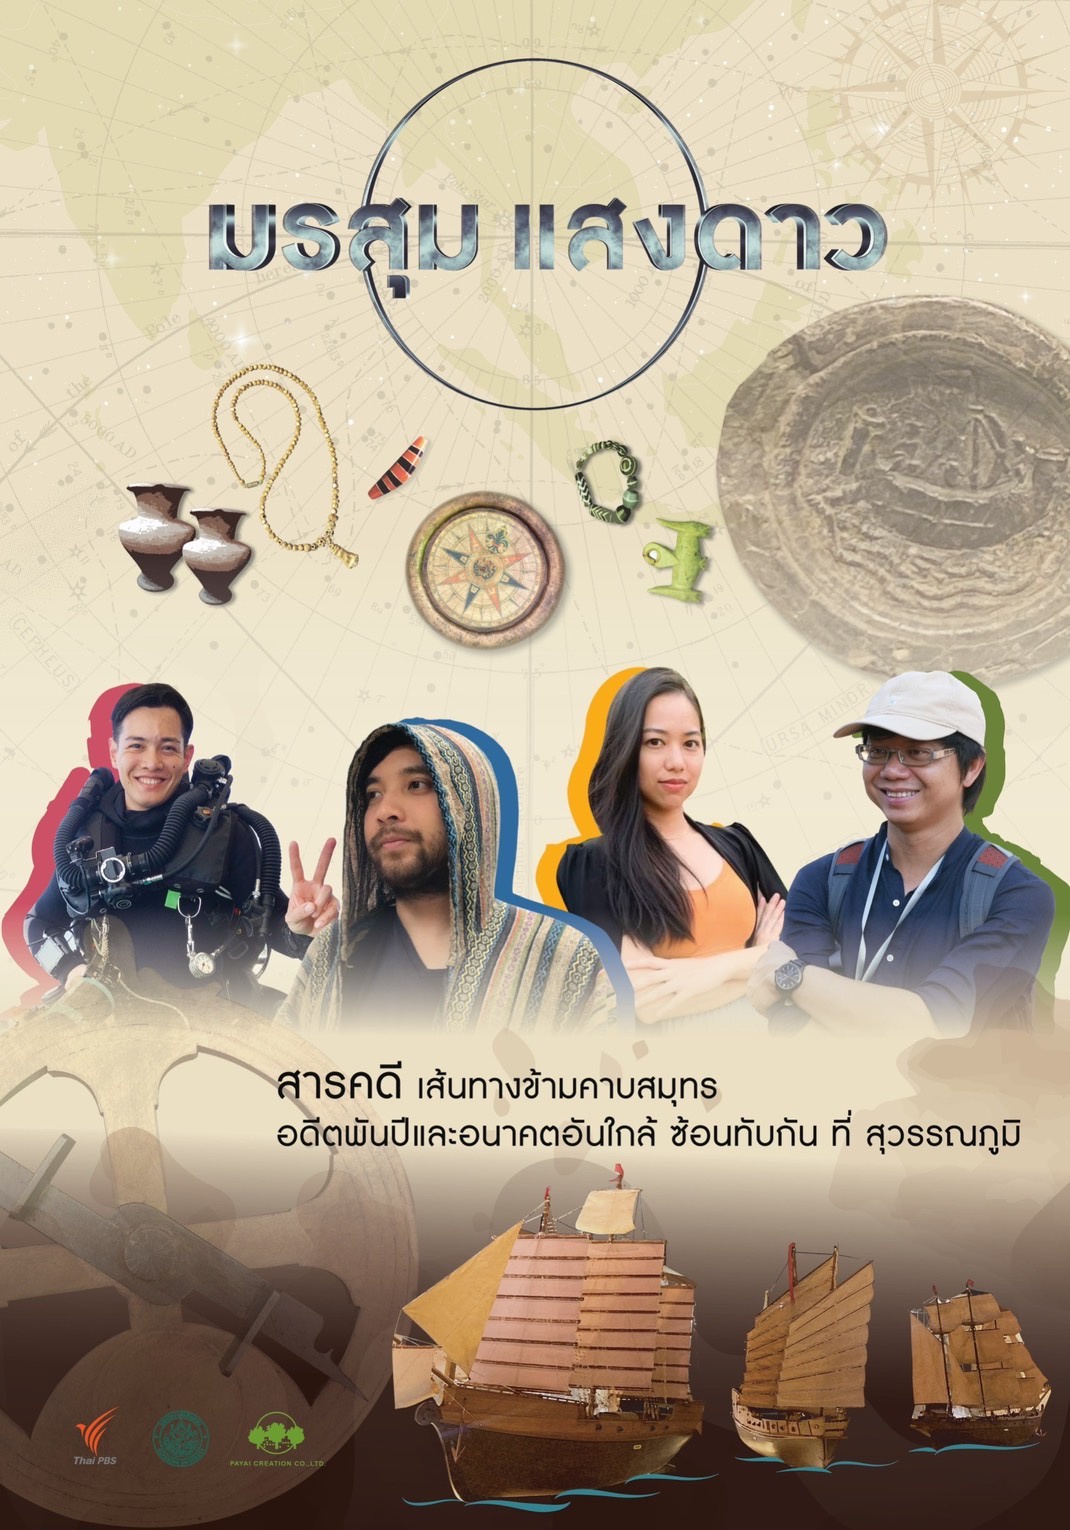 ธัชชา ร่วมกับหอภาพยนตร์ (องค์การมหาชน) และมหาวิทยาลัยศิลปากร เตรียมพร้อมจัดงานแสดงนิทรรศการภาพยนตร์ Into Thai Films by TASSHA ถอดรหัสหนังไทย ระหว่างวันที่ 5-13 กุมภาพันธ์ 2565